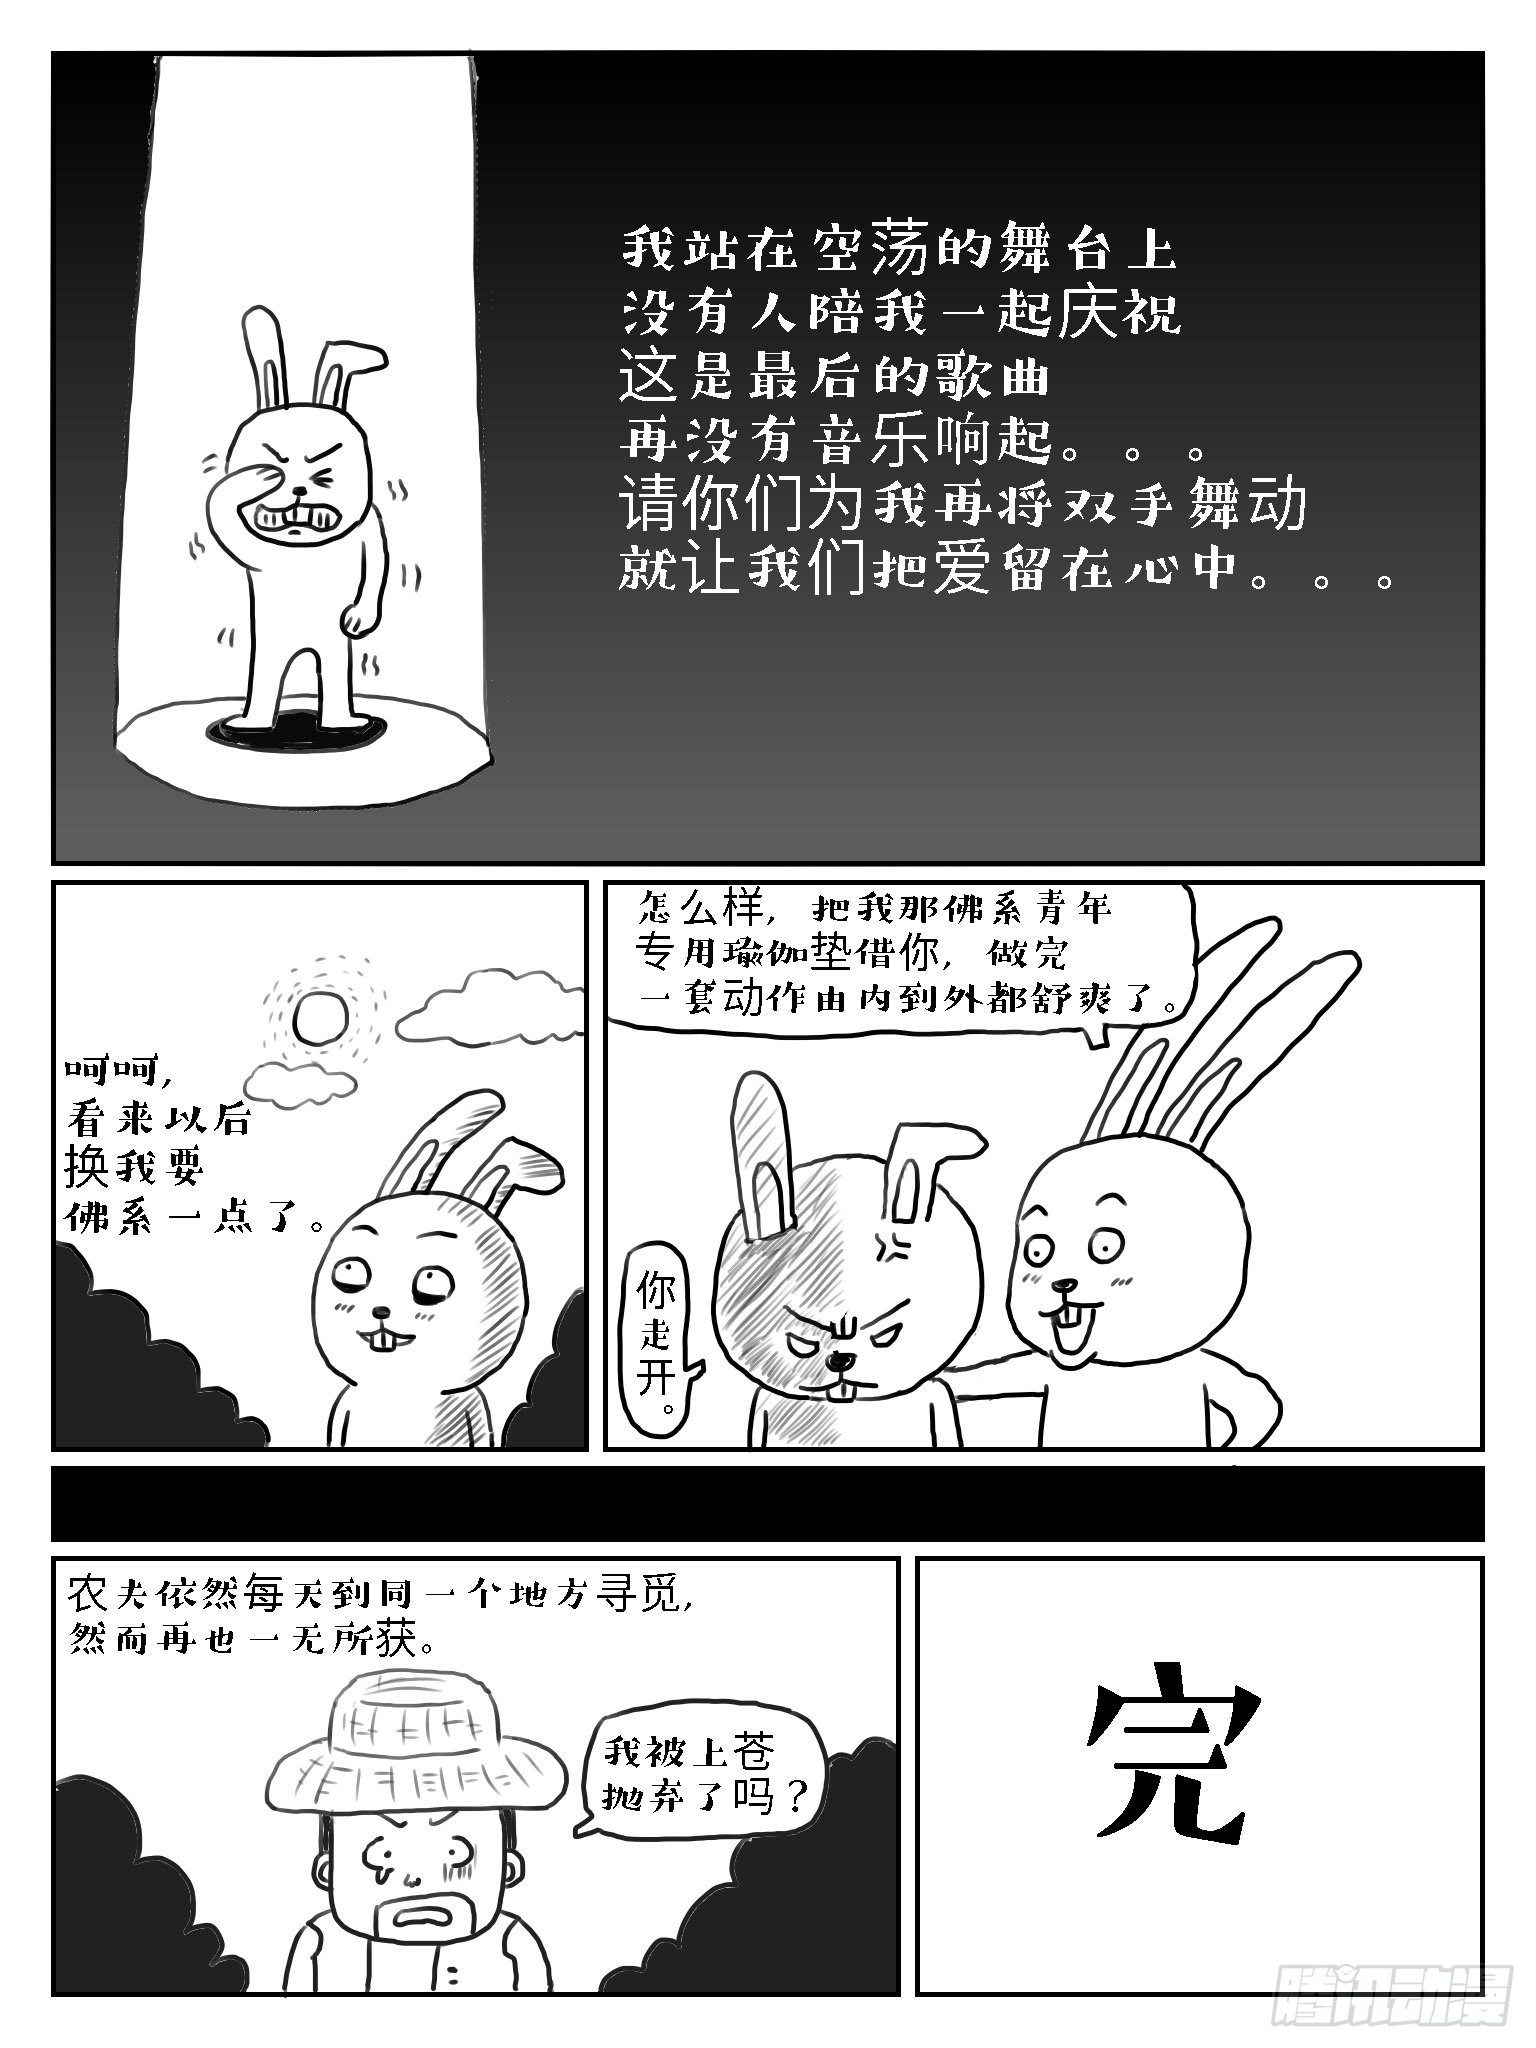 成語故事 - 守株待兔 - 2